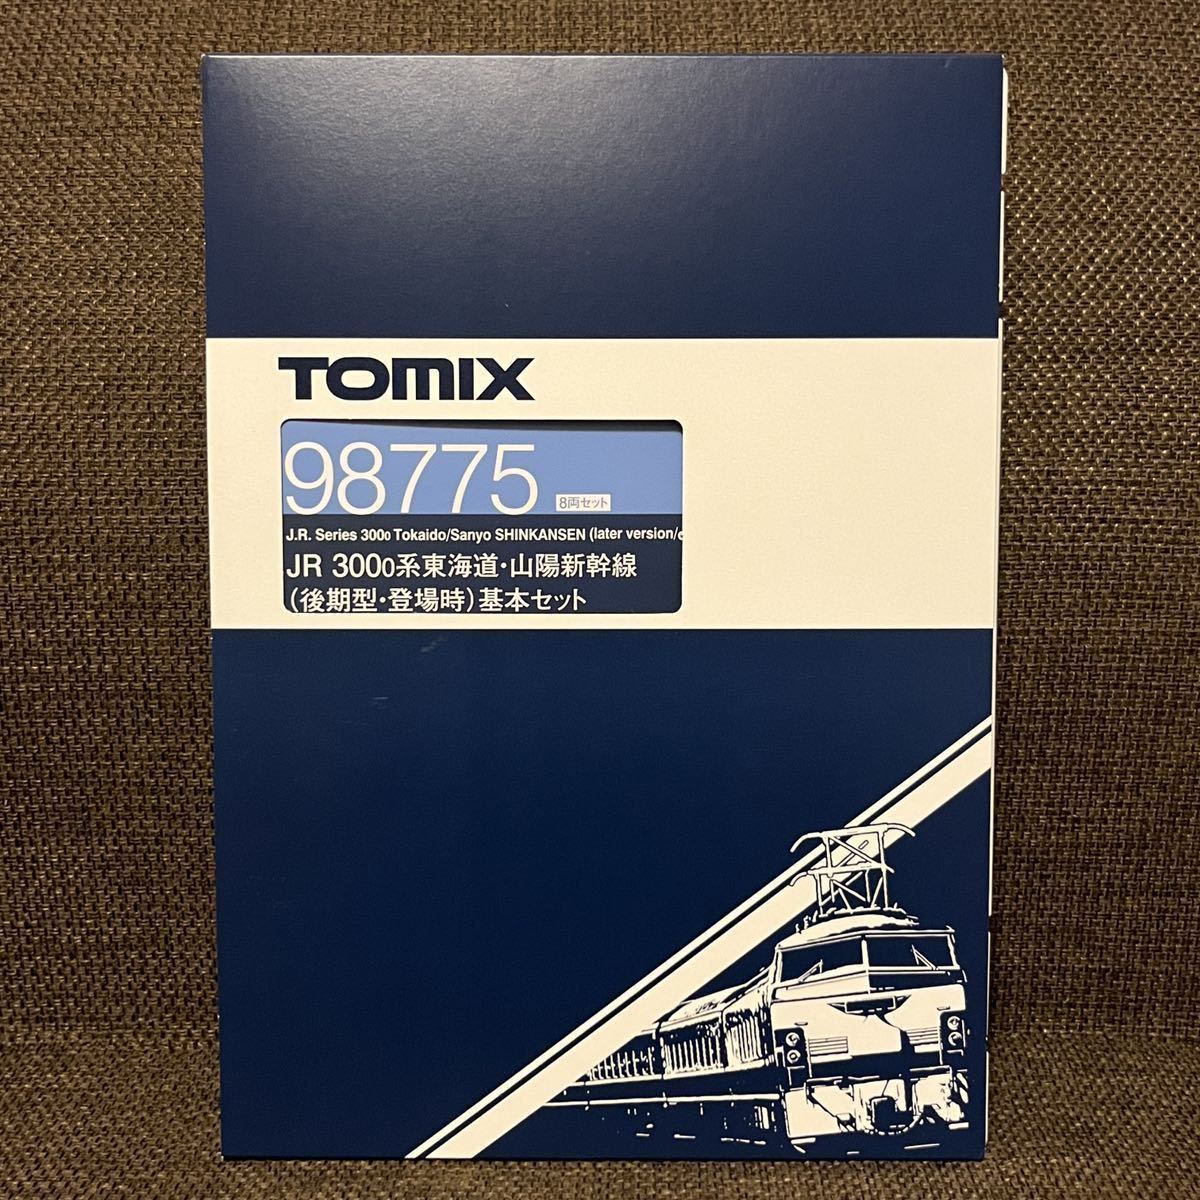 ☆新品未使用☆ TOMIX(トミックス) 98775 JR 300-0系東海道・山陽